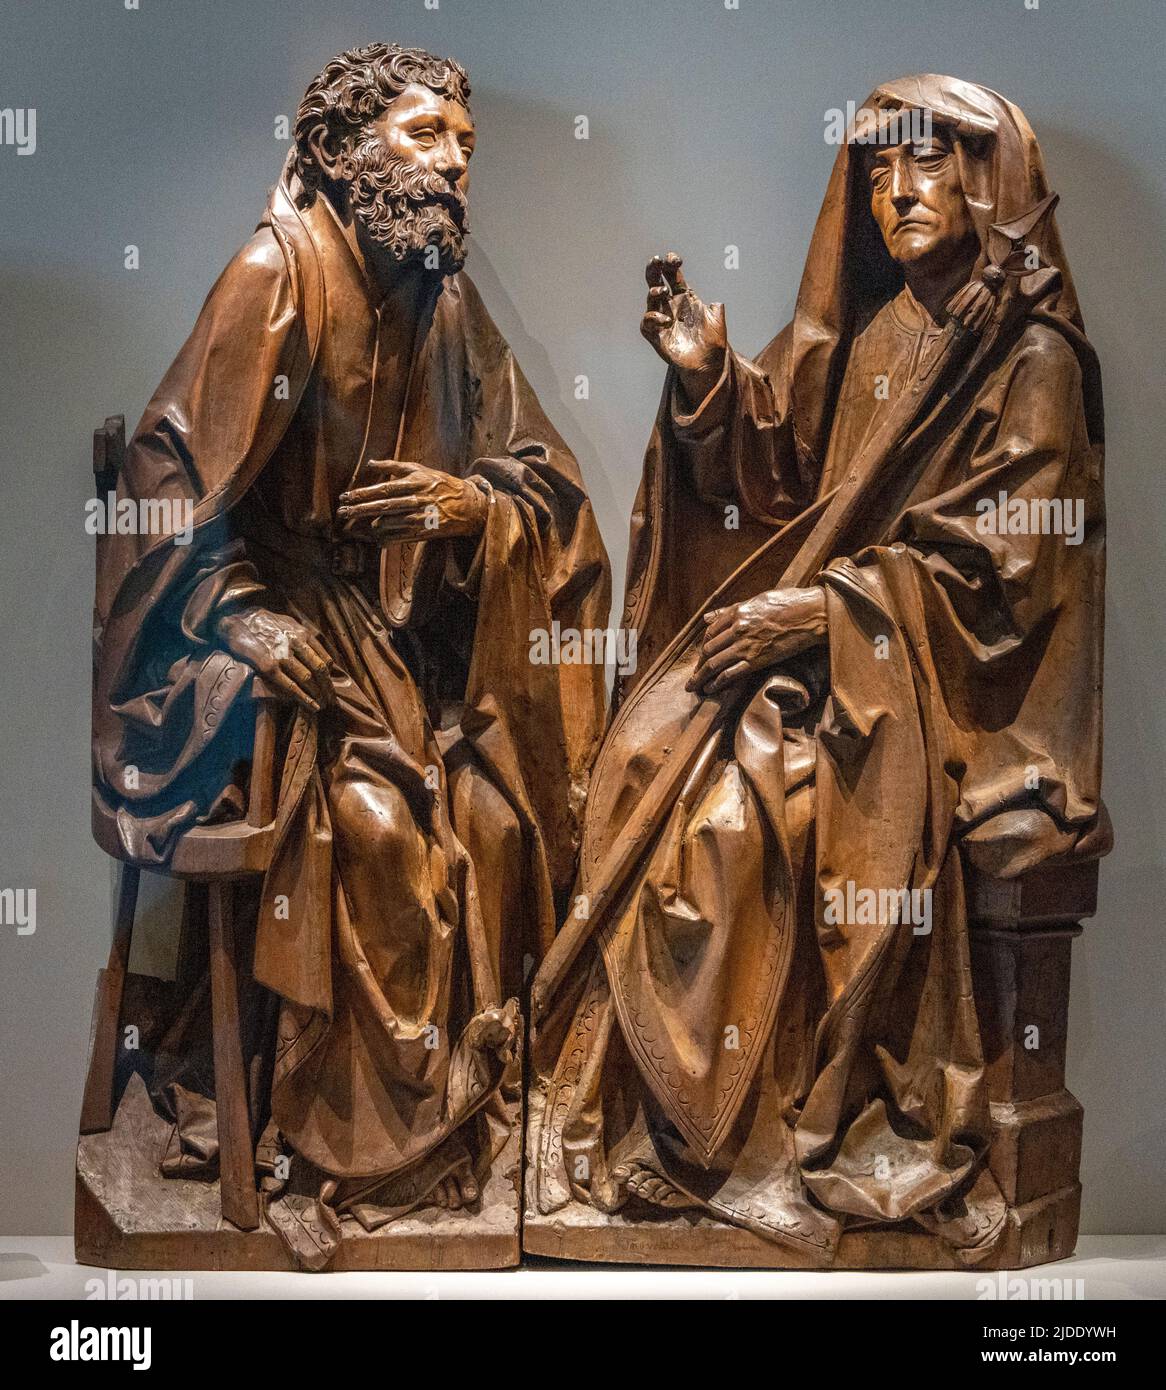 Tilman Riemenschneider, detail of 12 apostles, Bayerisches Nationalmuseum, Munich, Germany Stock Photo